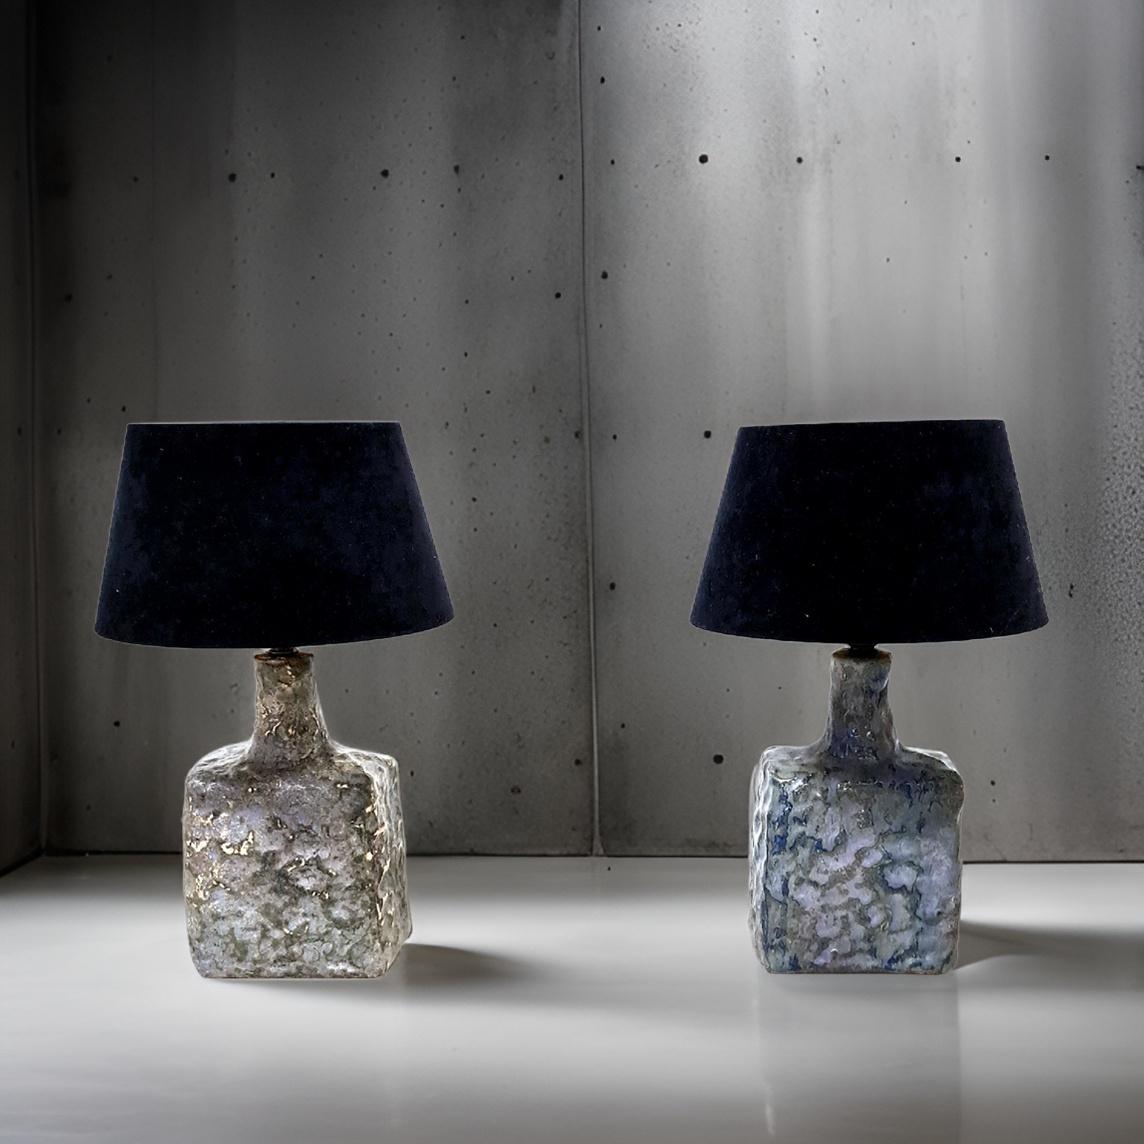 Ensemble de 2 lampes de table en céramique. Probablement conçu par Piet Knapper et fabriqué par l'atelier de céramique Mobach. Les lampes sont fabriquées en céramique et émaillées en gris bleuâtre. La texture des lampes donne un grand ombrage. Les